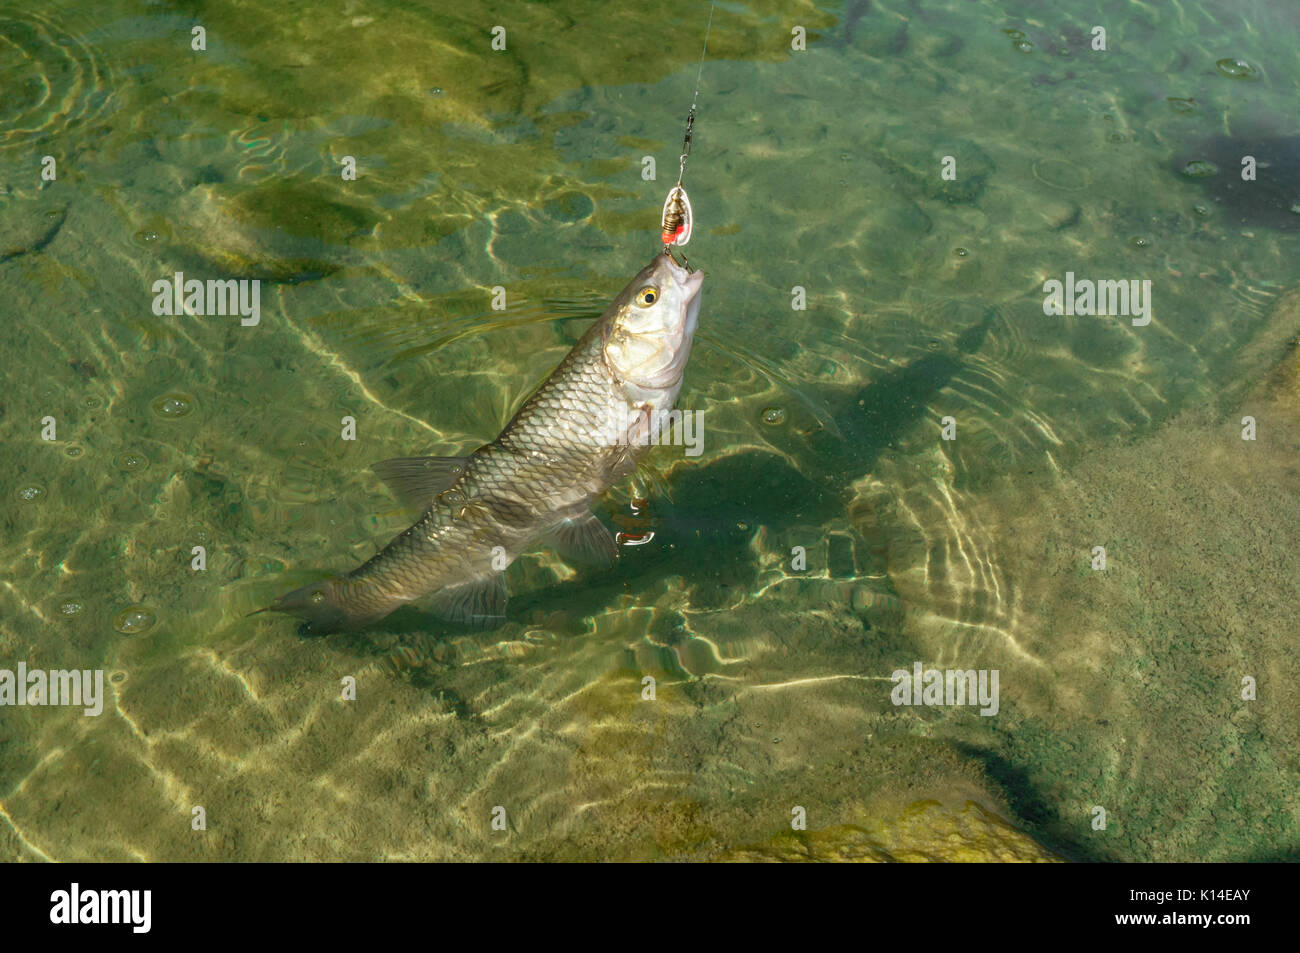 Unione cavedano (Squalius cefalo) catturati su una filiera con esca nella sua bocca mentre la pesca in un fiume con acqua poco profonda Foto Stock